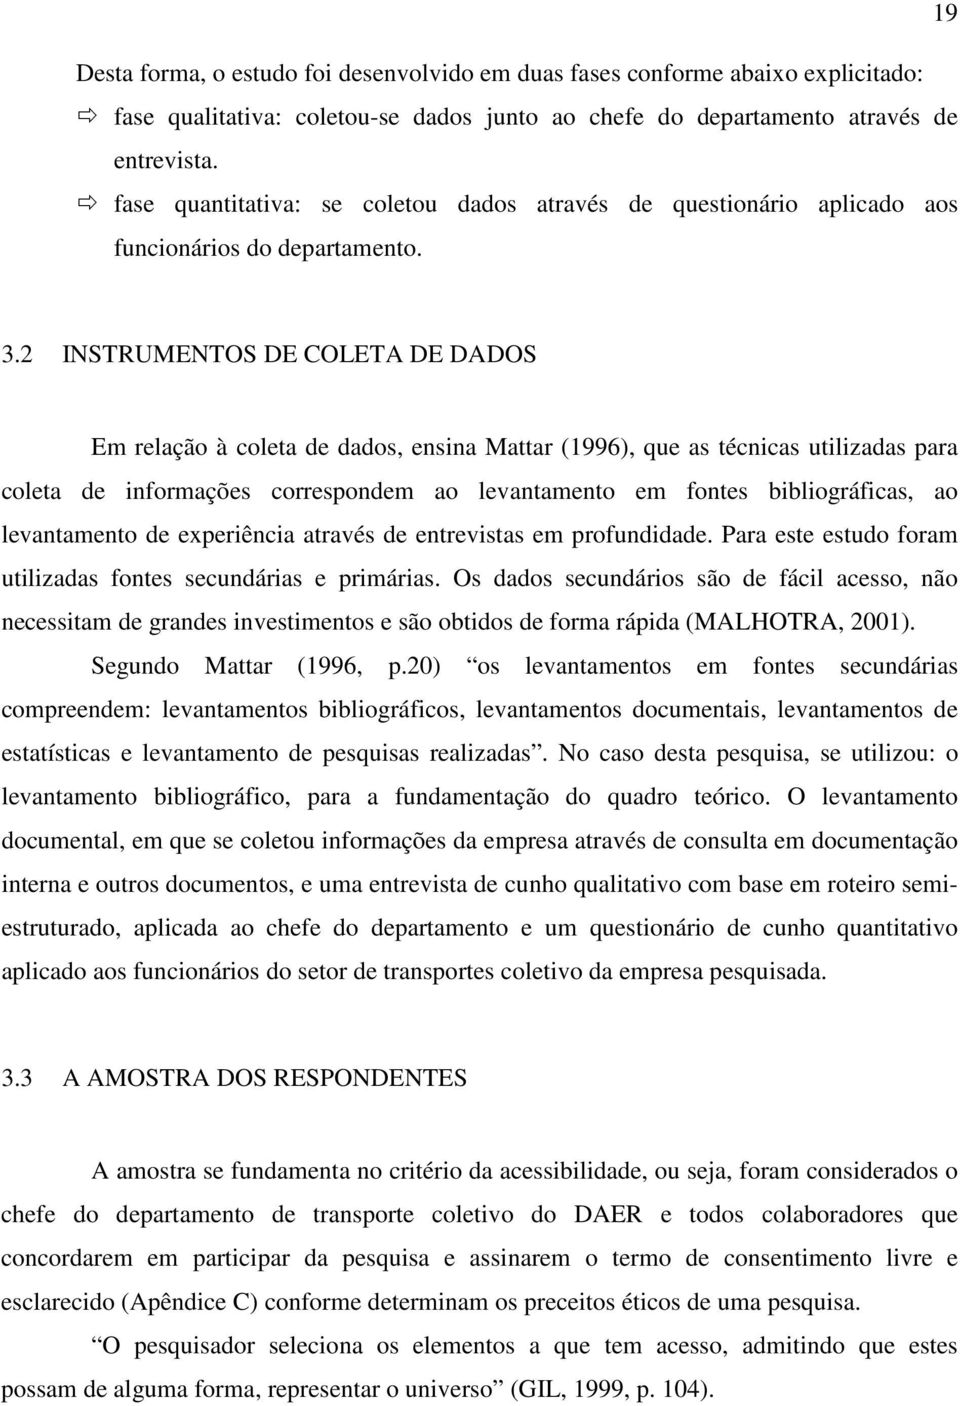 2 INSTRUMENTOS DE COLETA DE DADOS Em relação à coleta de dados, ensina Mattar (1996), que as técnicas utilizadas para coleta de informações correspondem ao levantamento em fontes bibliográficas, ao